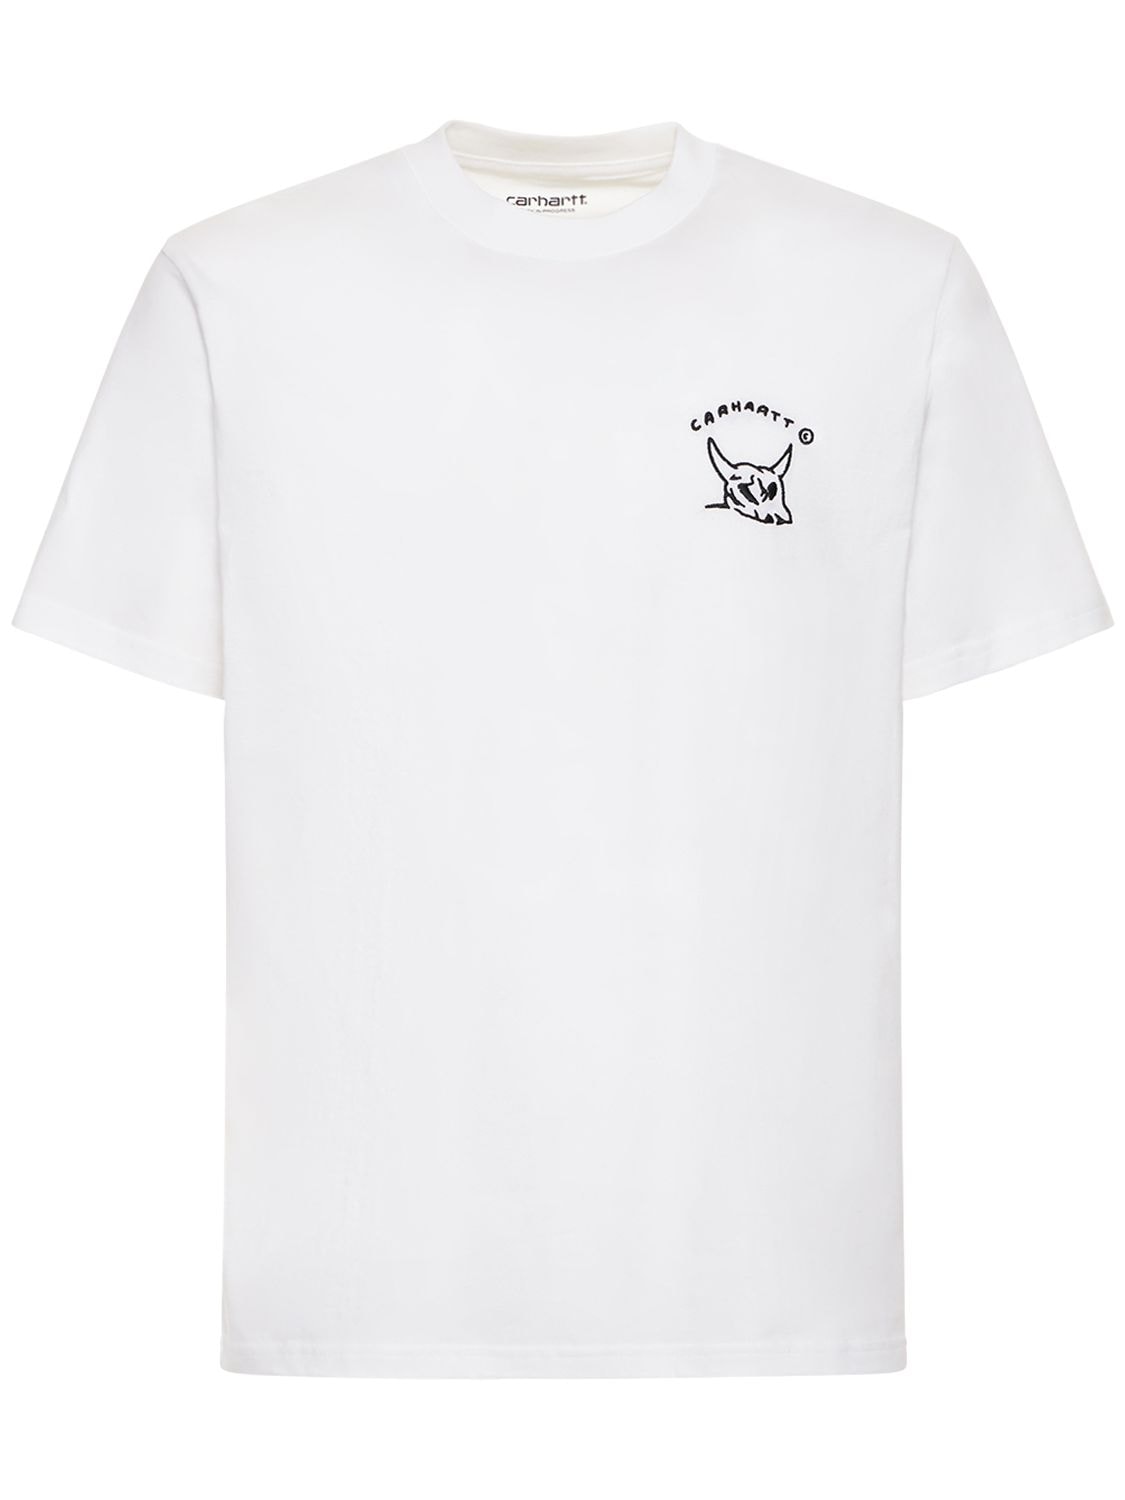 New Frontier Organic Cotton T-shirt - CARHARTT WIP - Modalova